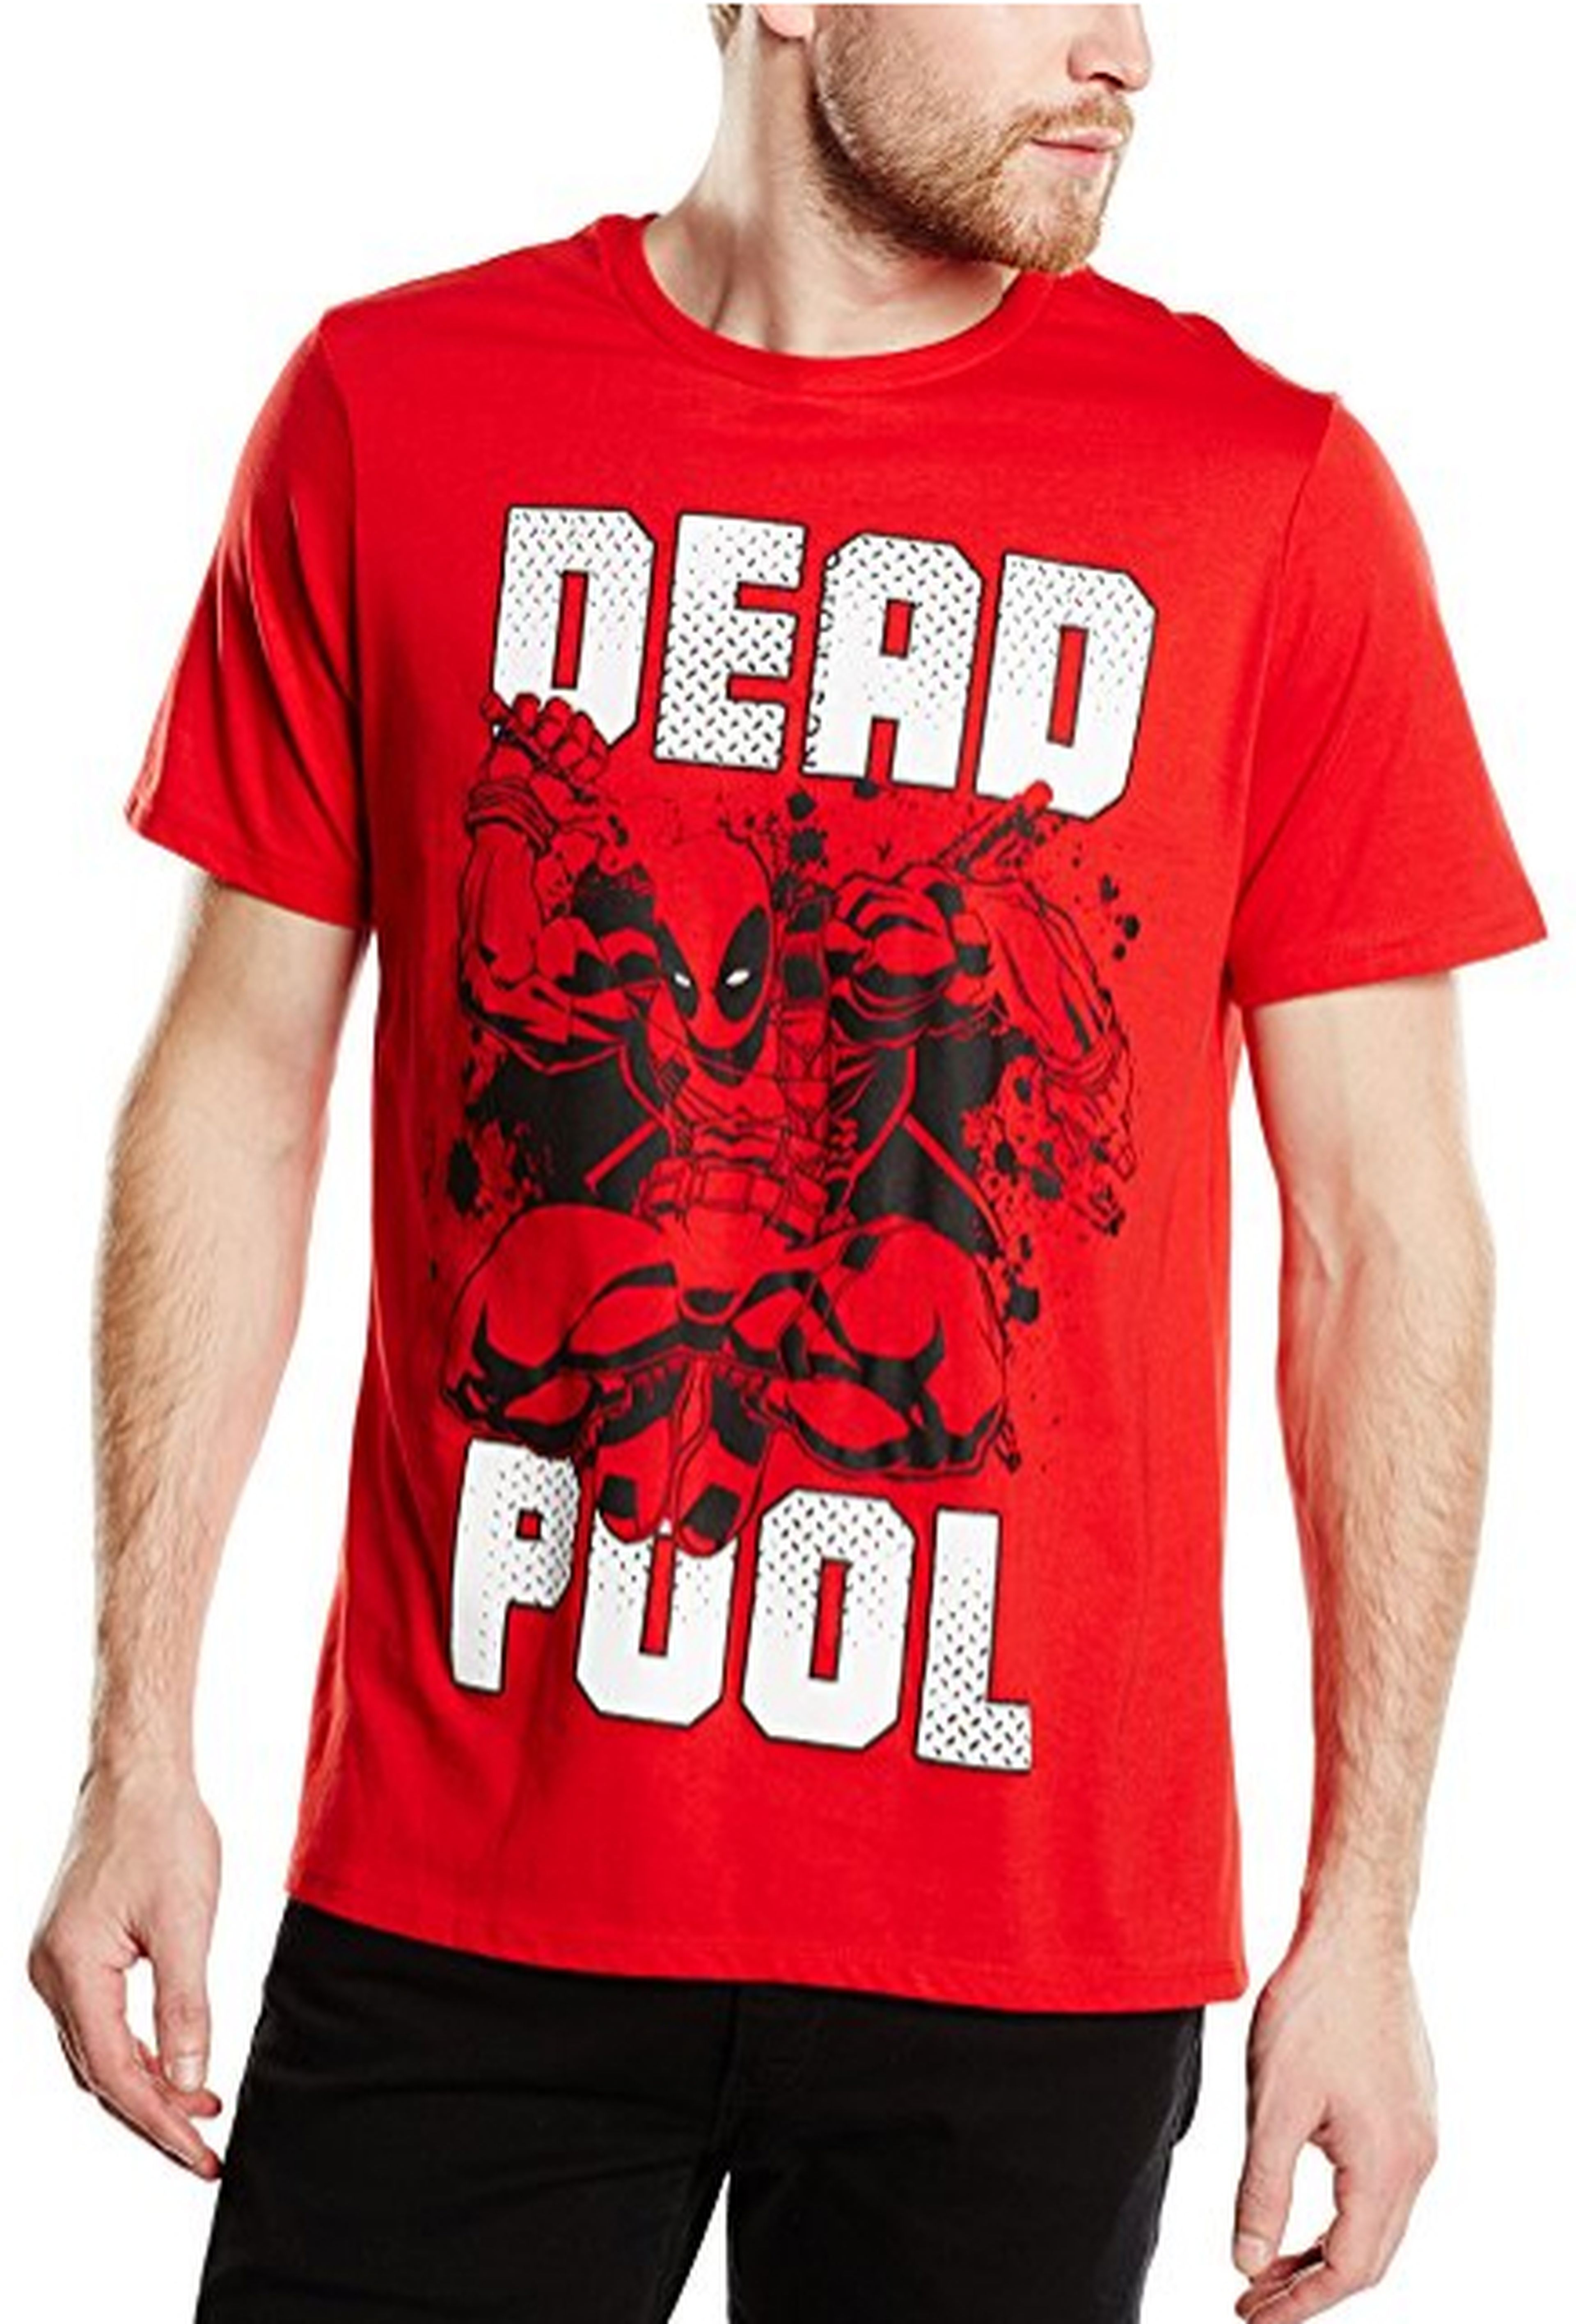 Camiseta Deadpool